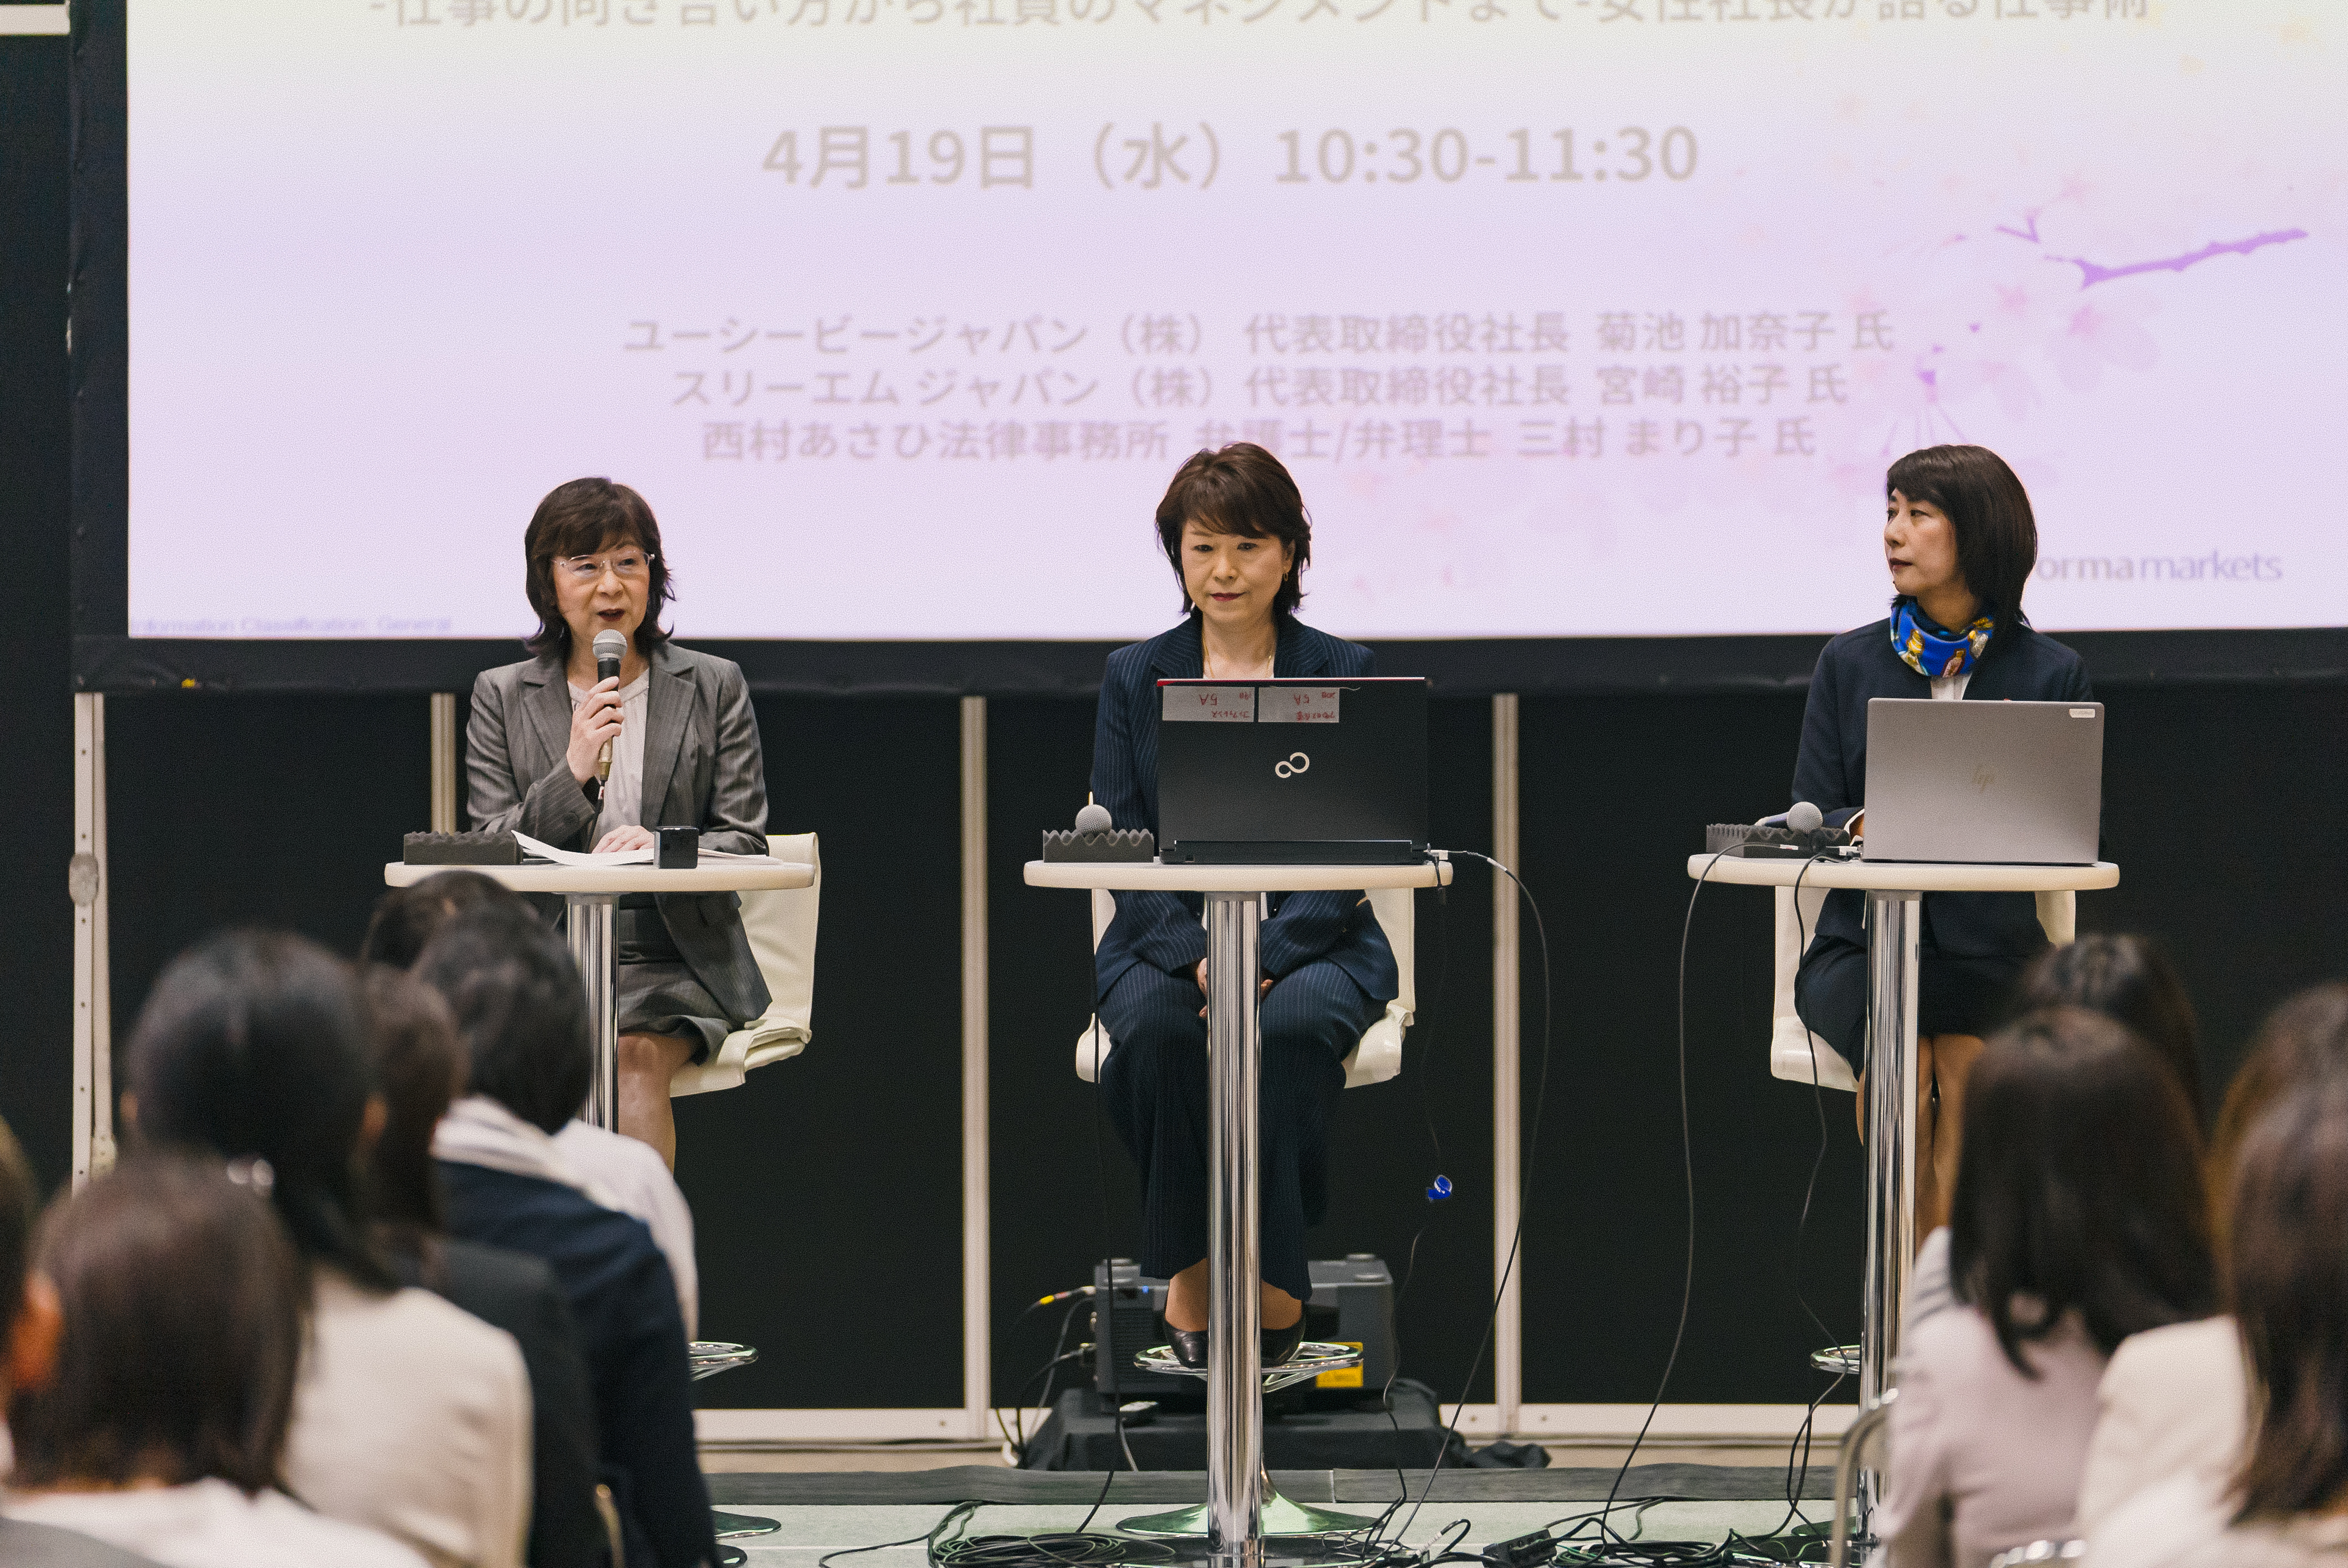 CPHI Japan - Pharma speakers on seminar stage